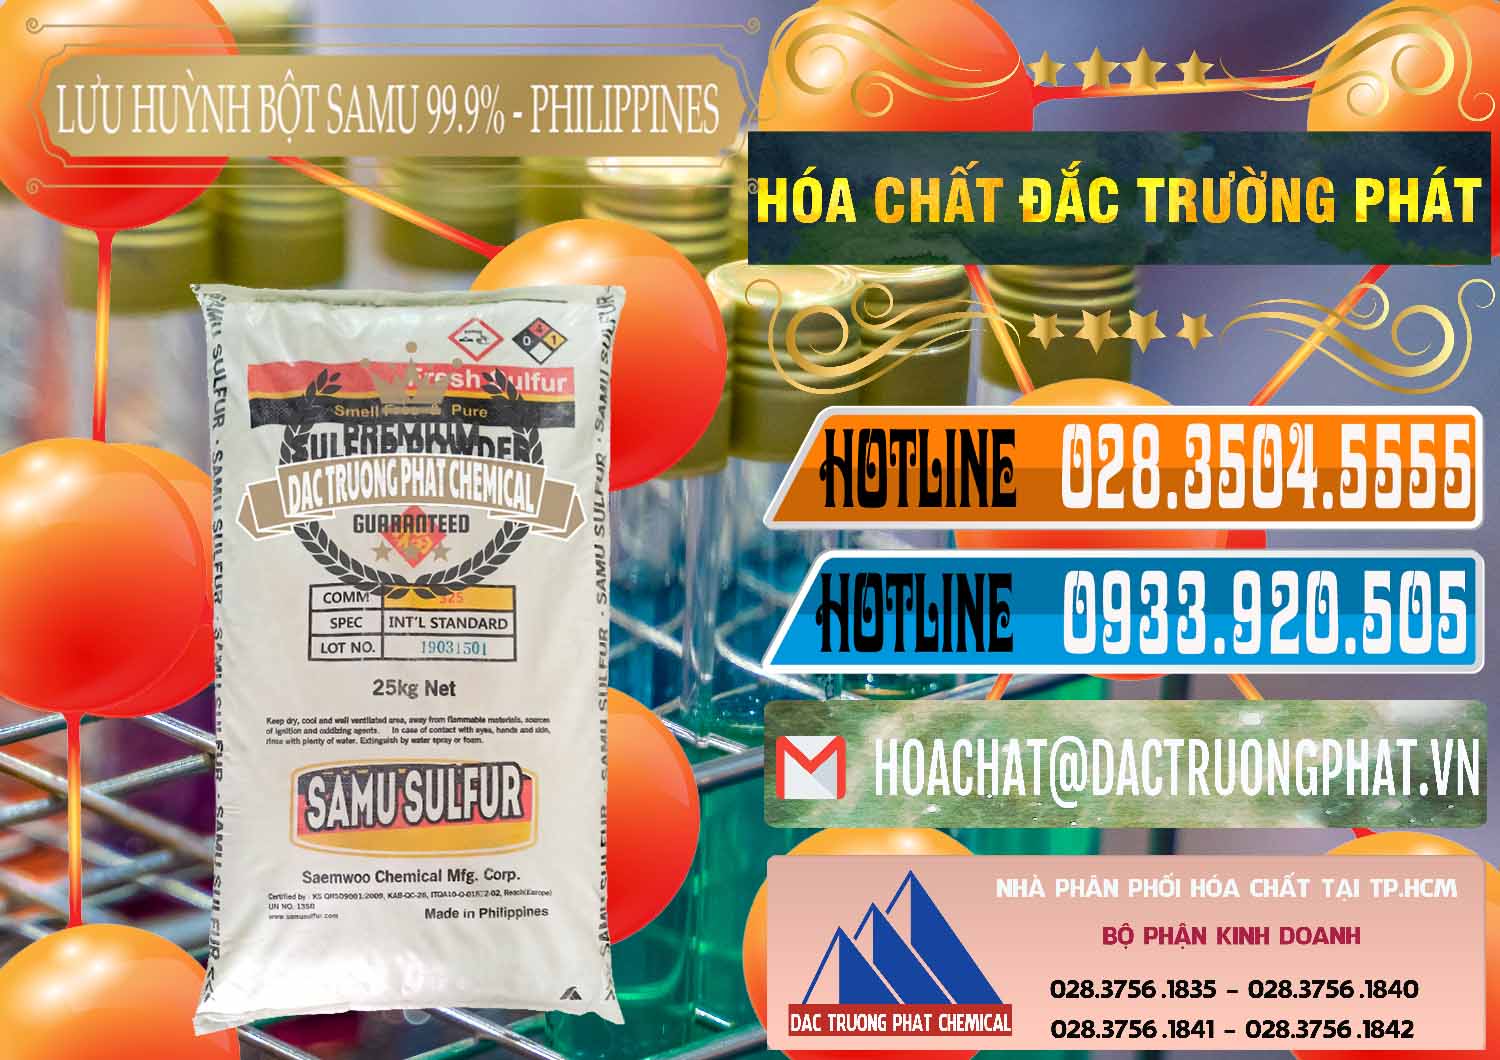 Công ty bán ( cung cấp ) Lưu huỳnh Bột - Sulfur Powder Samu Philippines - 0201 - Đơn vị cung cấp & phân phối hóa chất tại TP.HCM - stmp.net